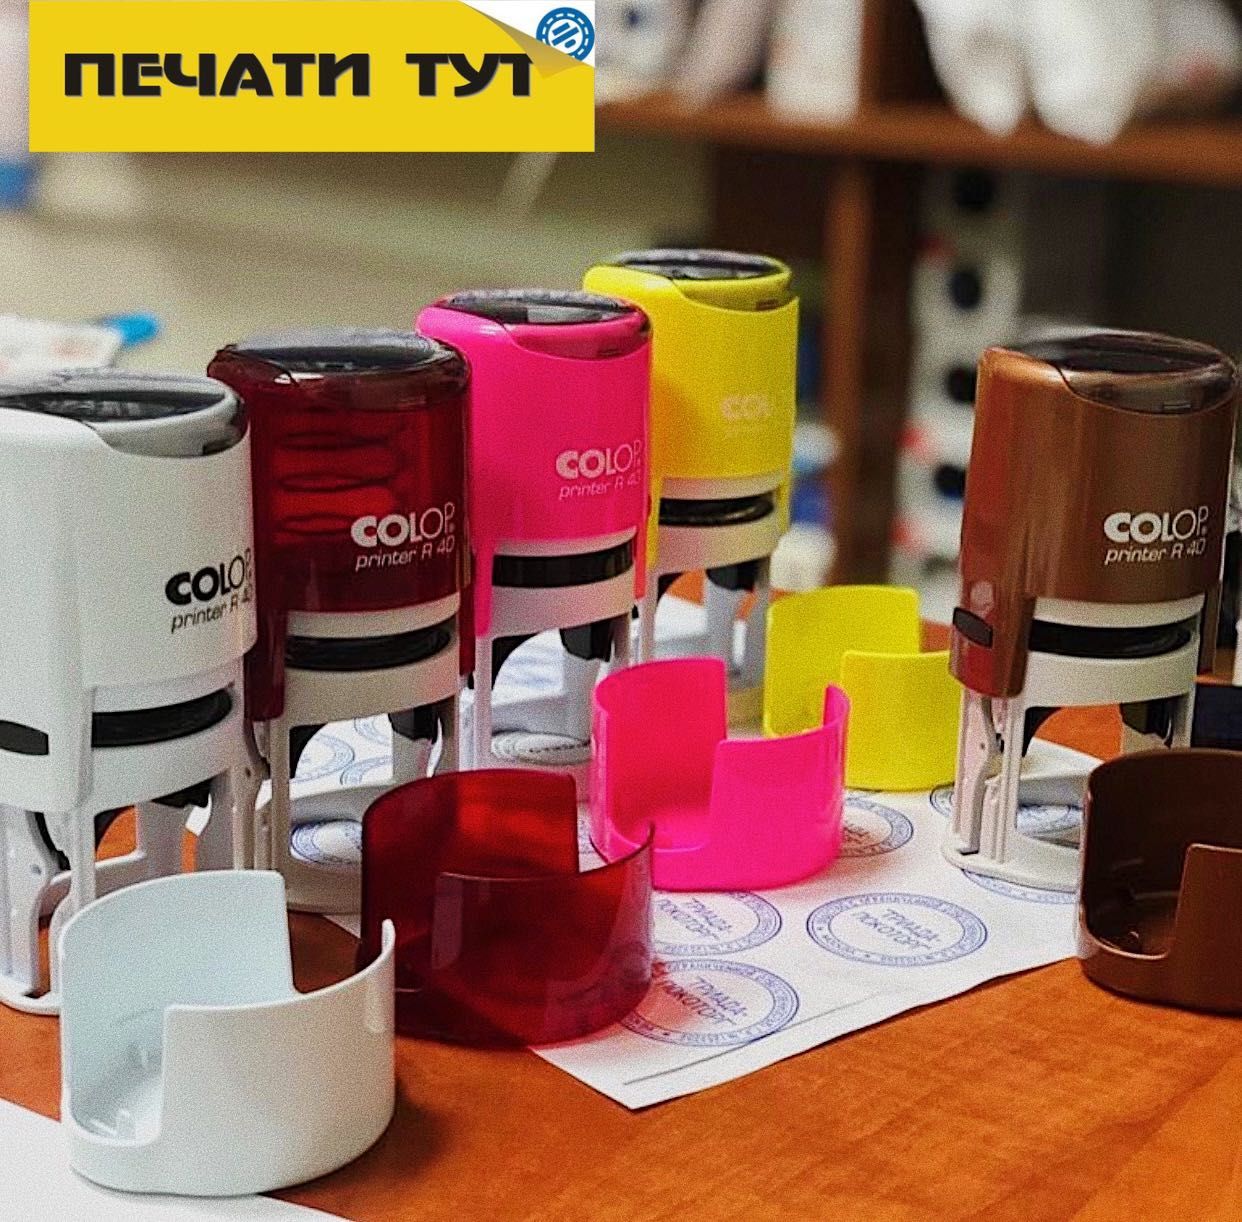 Изготовление печатей ,штампов и факсимиле для ЯТТ, OОO,СПООО г.Ташкент